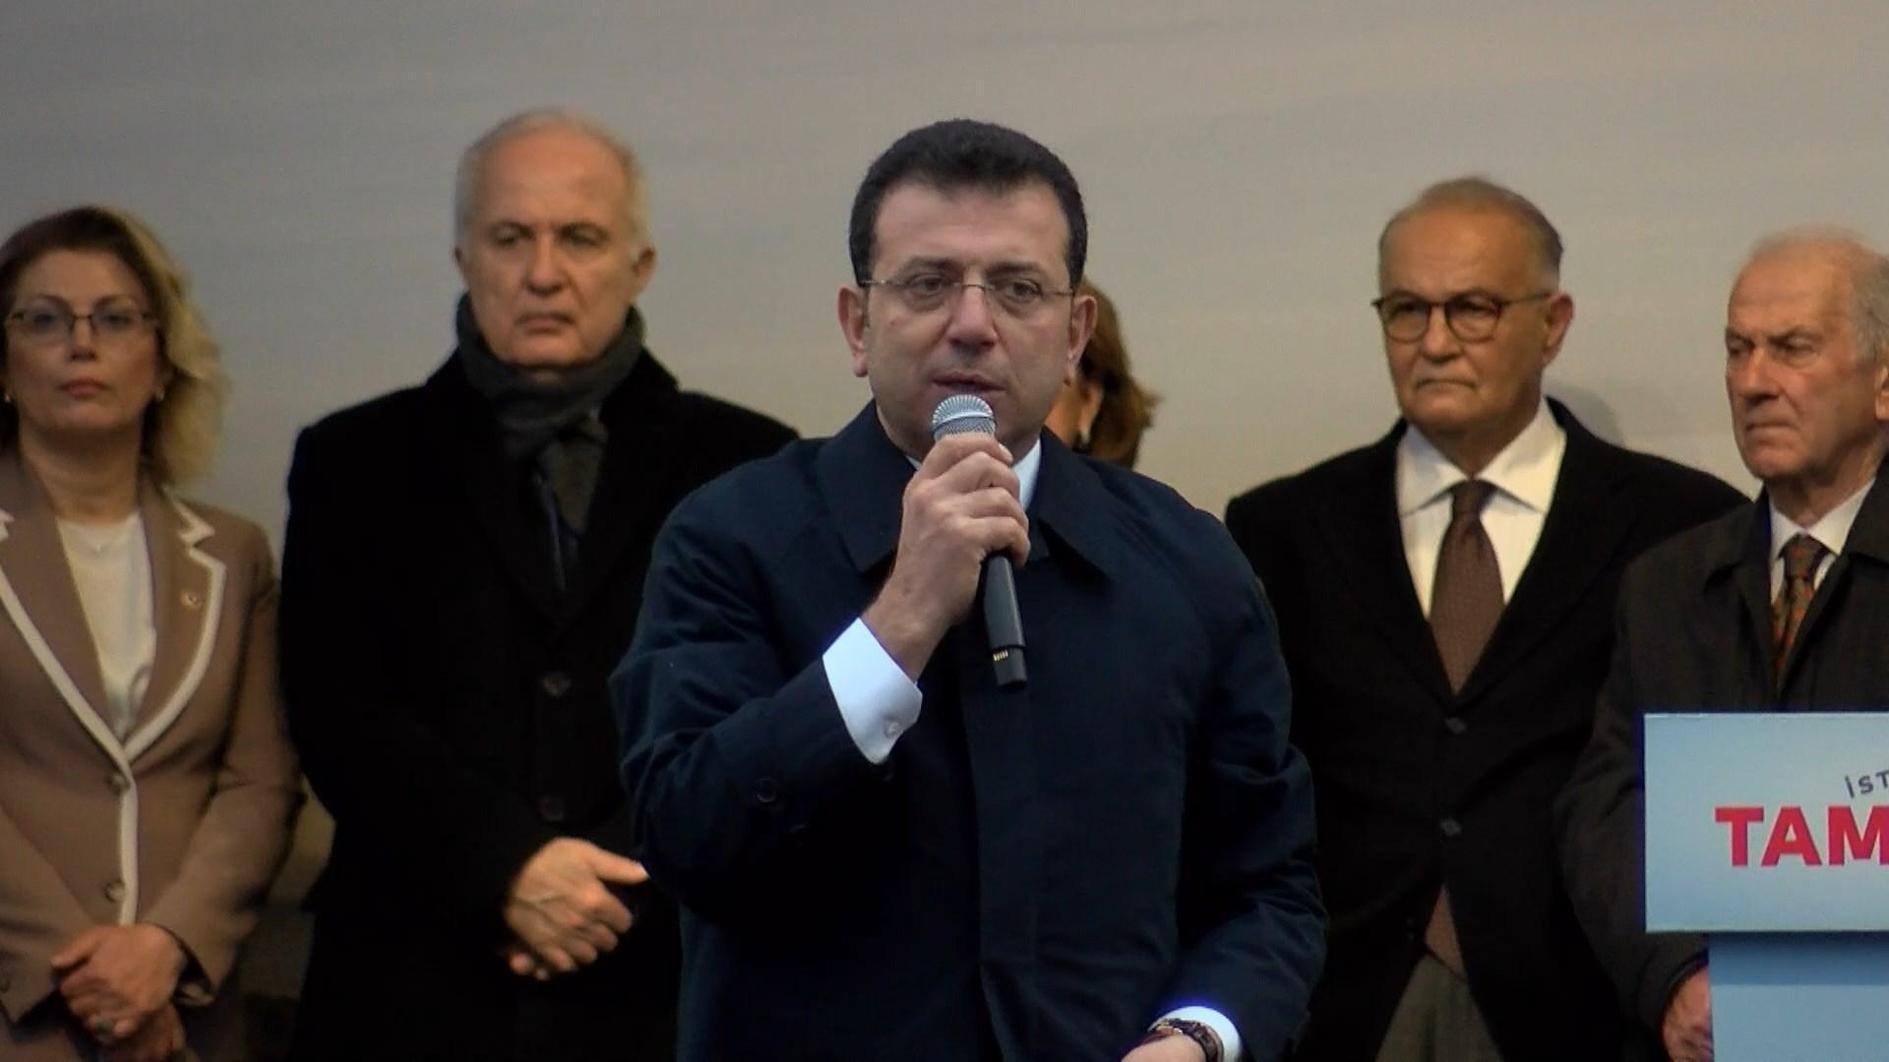 De burgemeester van Istanboel wil de Europese Spelen van 2027 organiseren